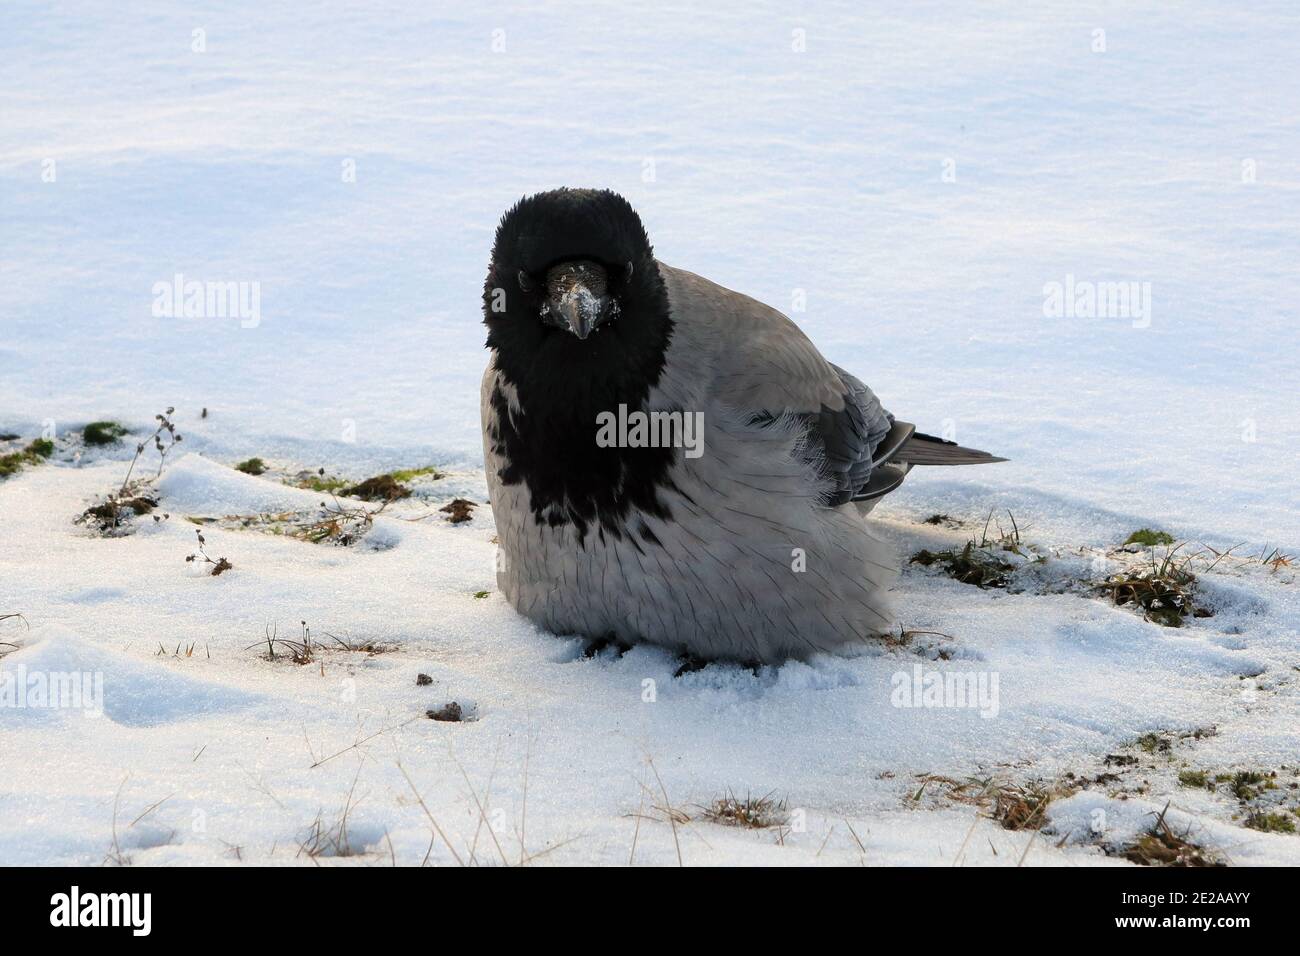 Jeune corbeau à capuche, corvus cornix, qui pille ses plumes, perchée sur un sol enneigé pour conserver la chaleur lors d'une matinée froide. Banque D'Images